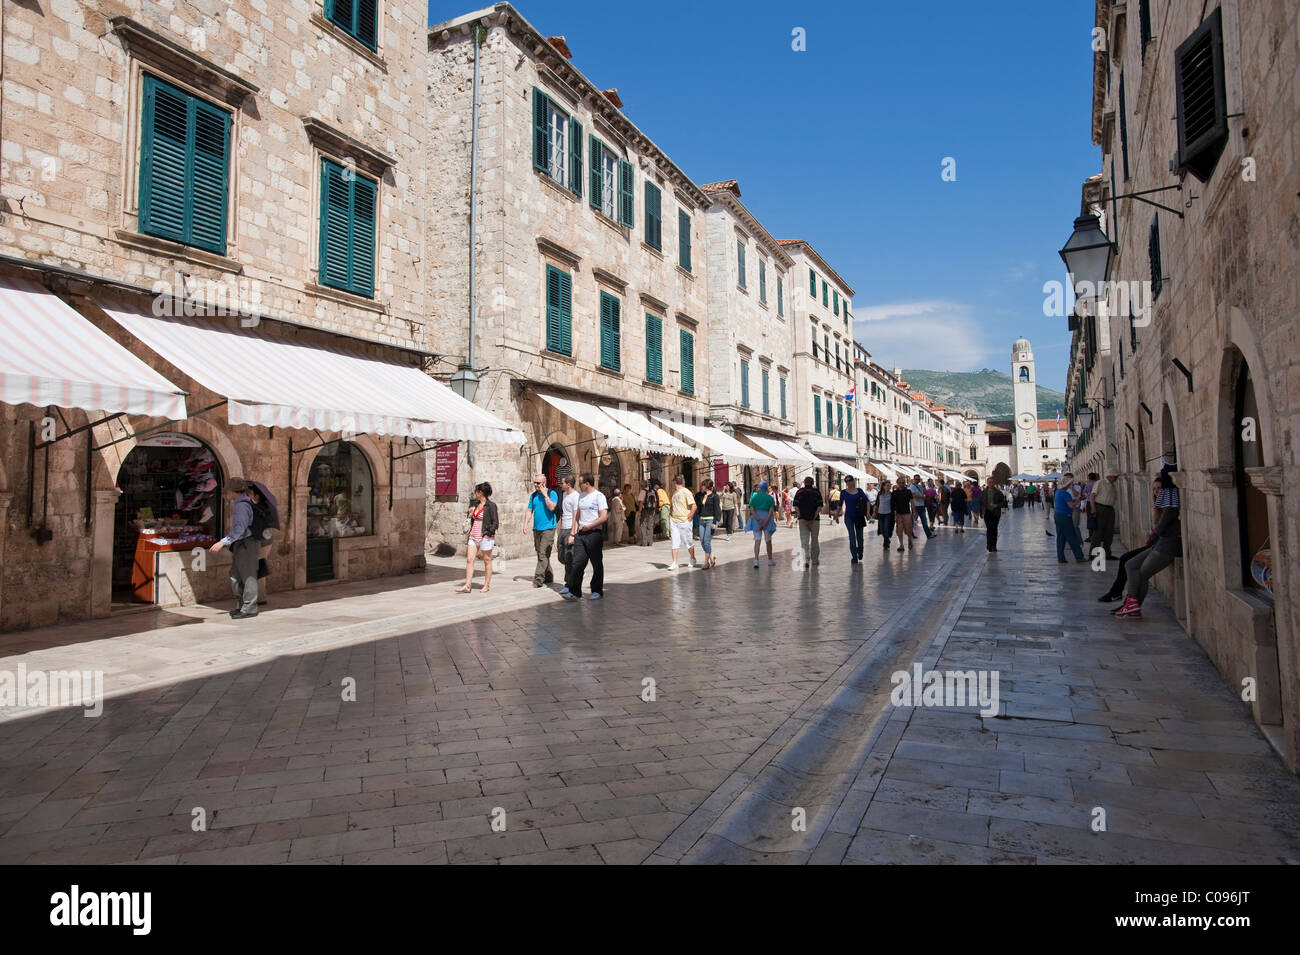 Placa, Stradun, città vecchia, Dubrovnik, contea di Dubrovnik, Croazia, Europa Foto Stock